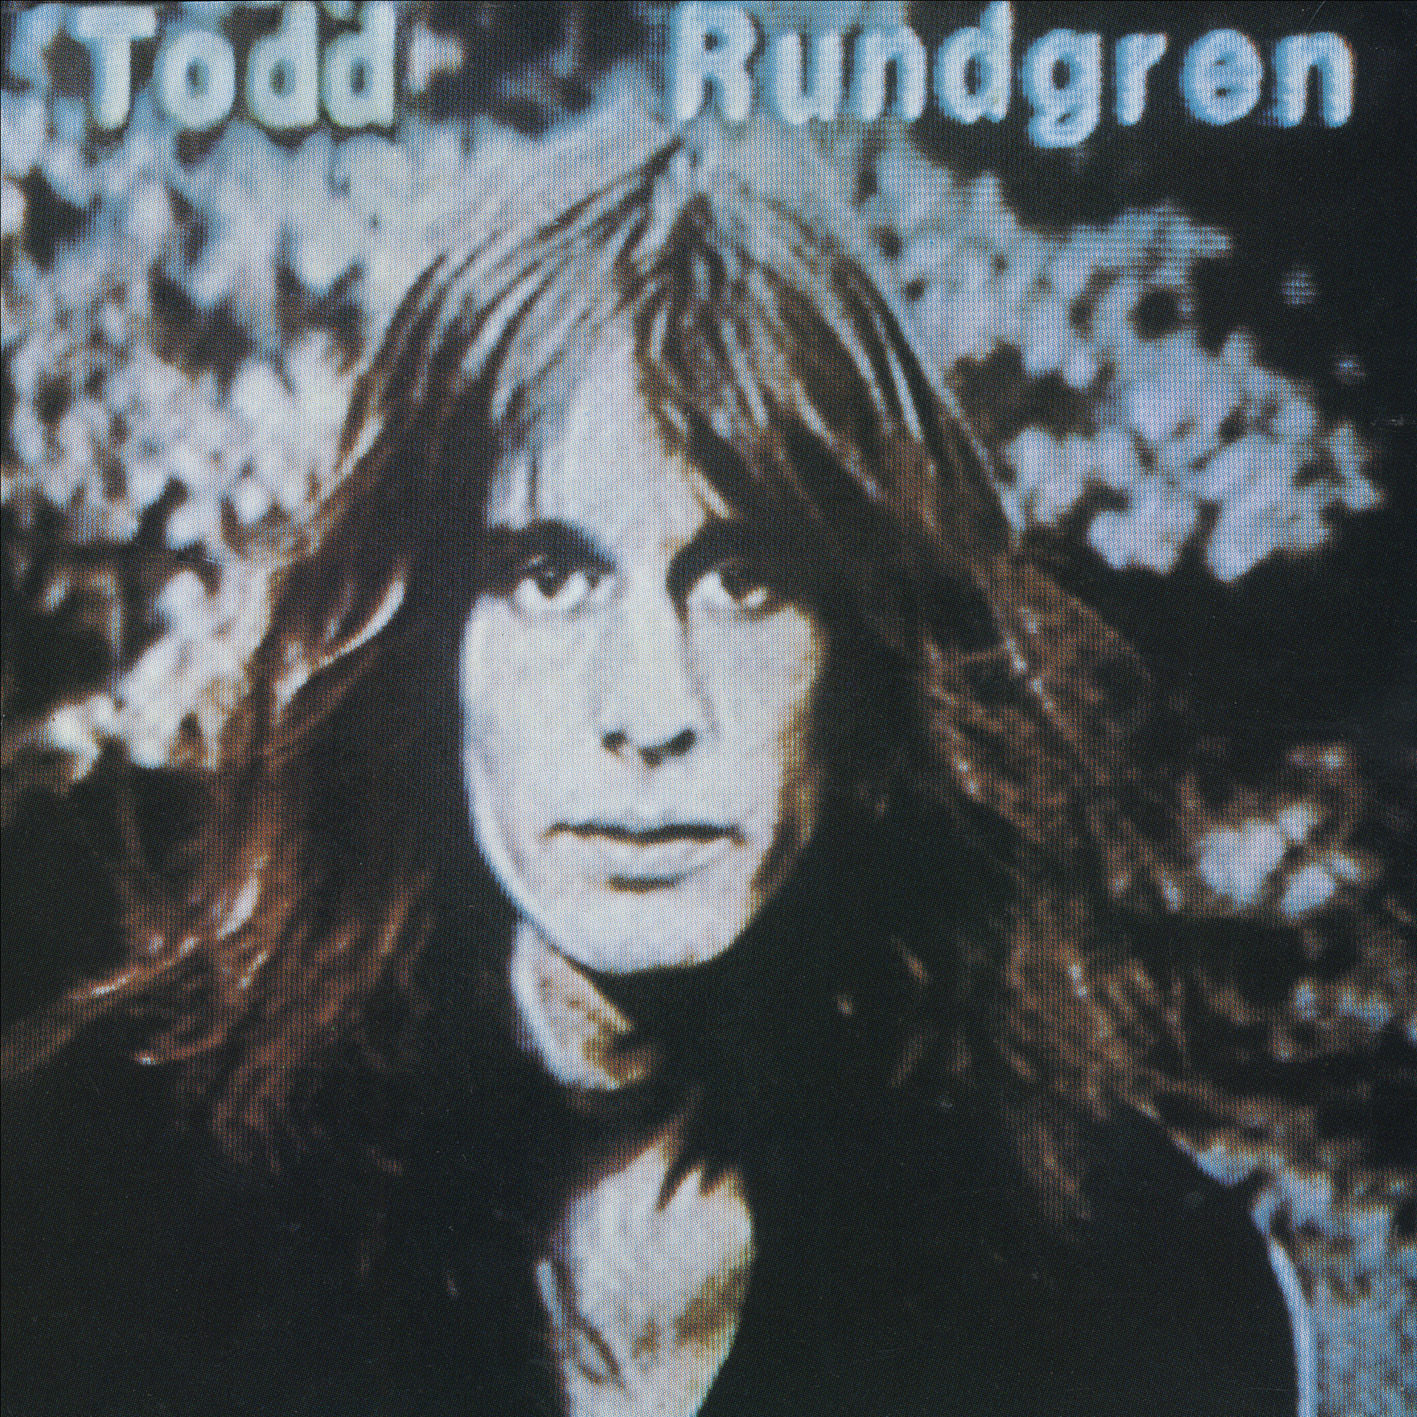 Todd Rundgren - Hermit Of Mink Hollow (1978/2013) [HDTracks FLAC 24bit/192kHz]